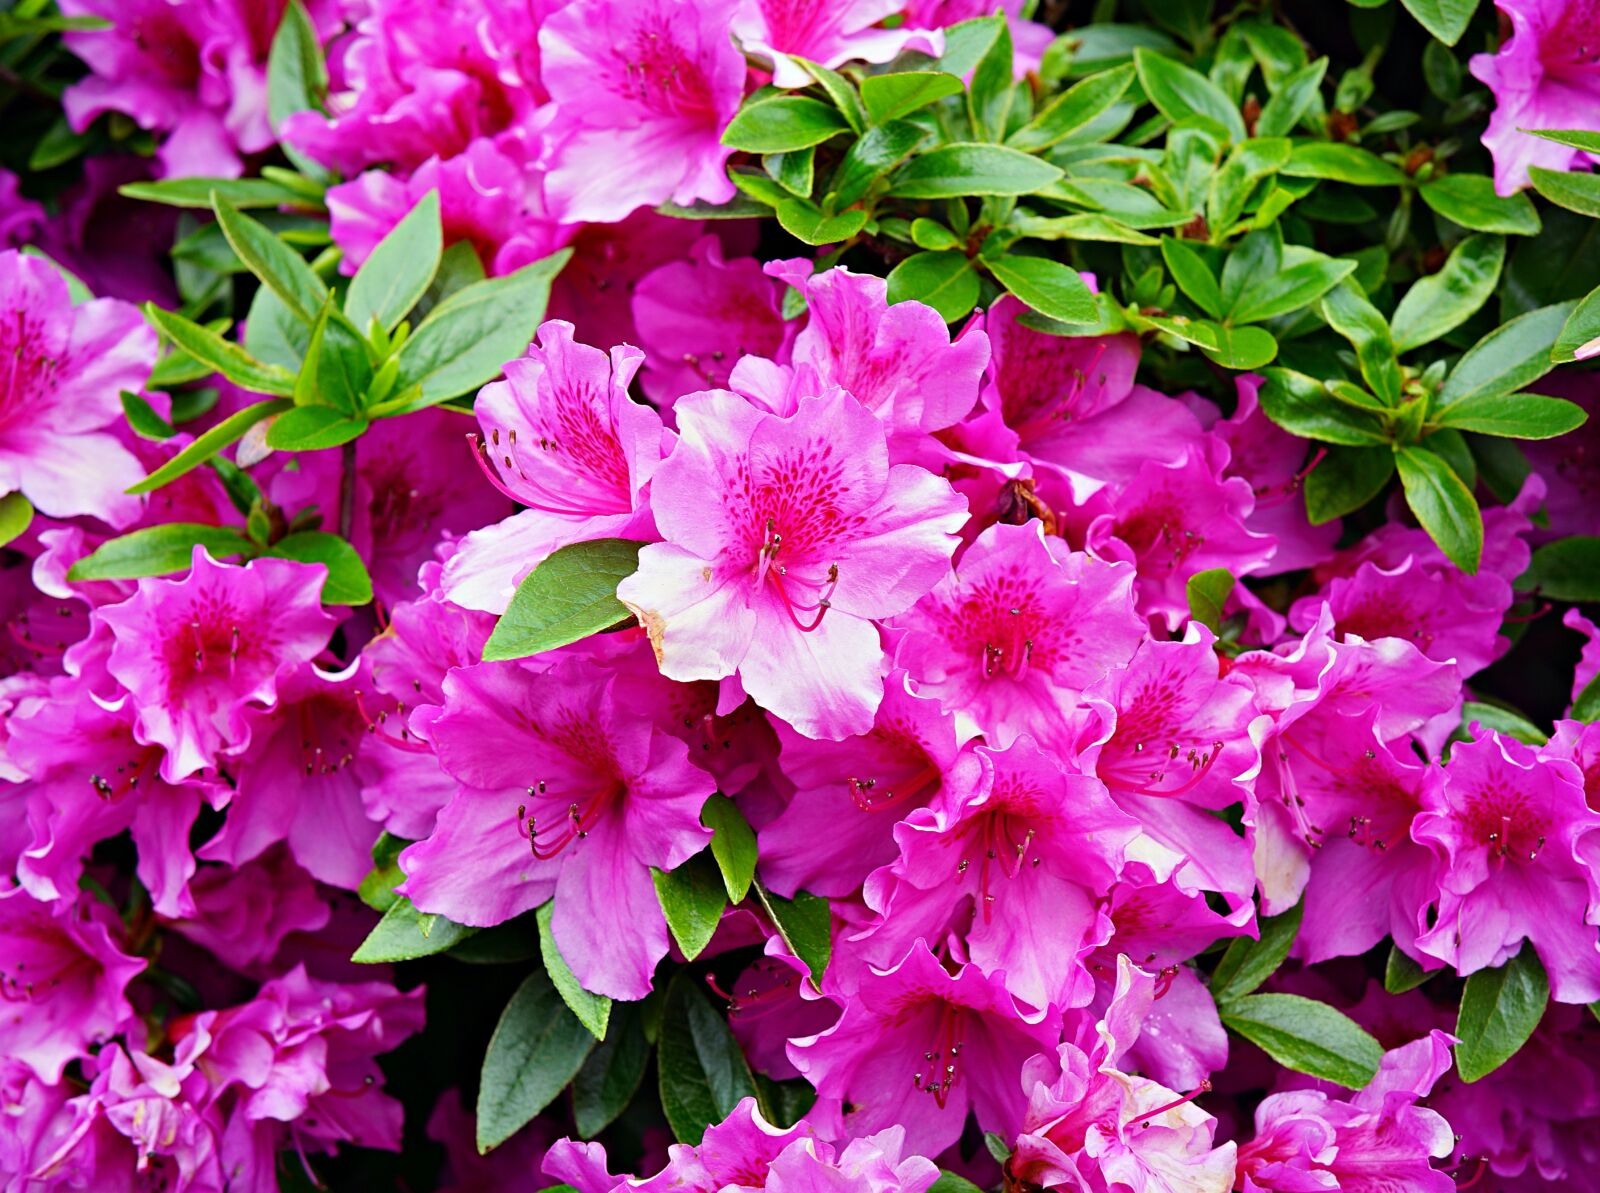 Samyang AF 45mm F1.8 FE sample photo. Azaleas, pink, flowers photography